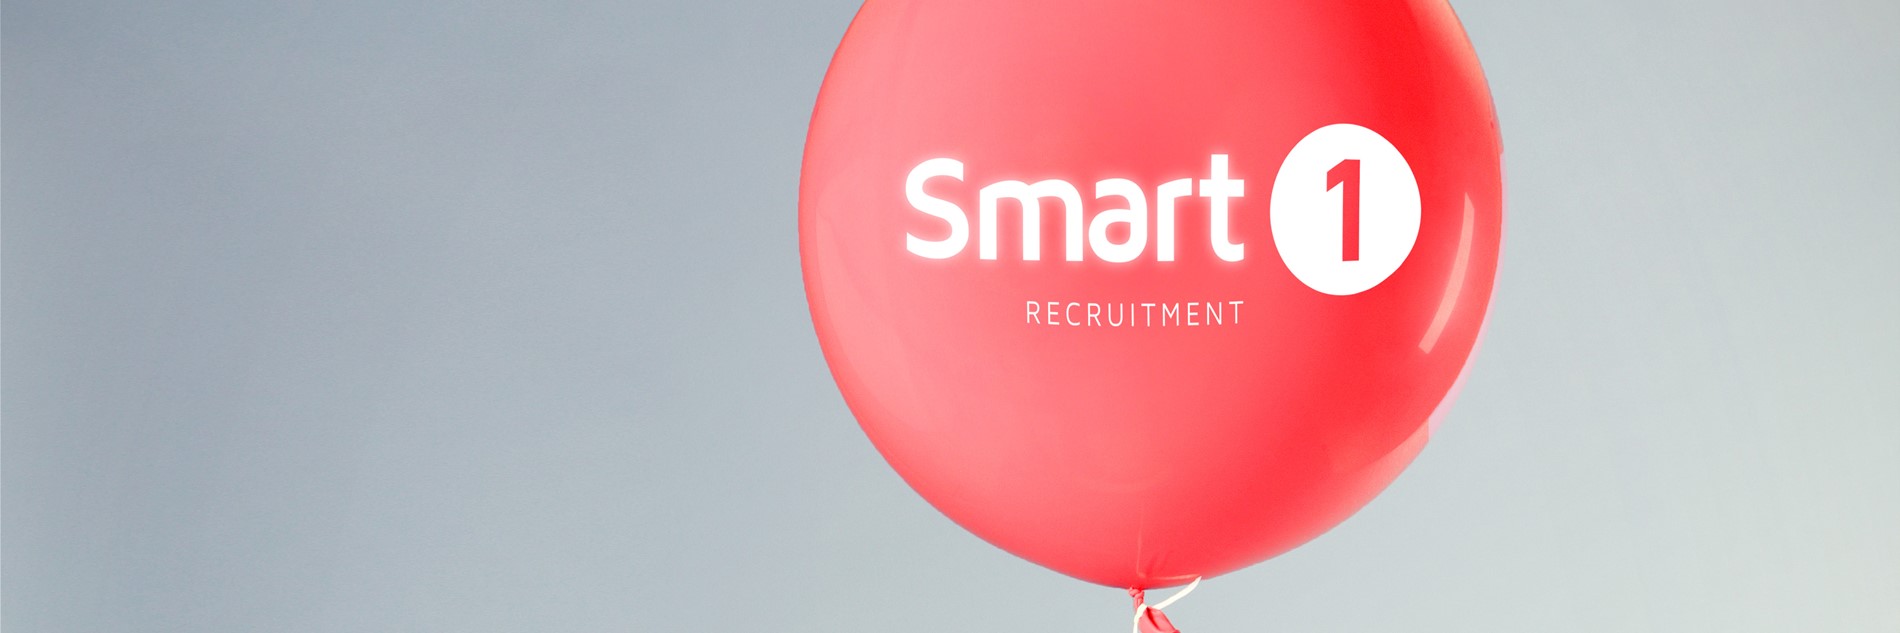 Smart 1 Recruitment's 2nd Birthday!